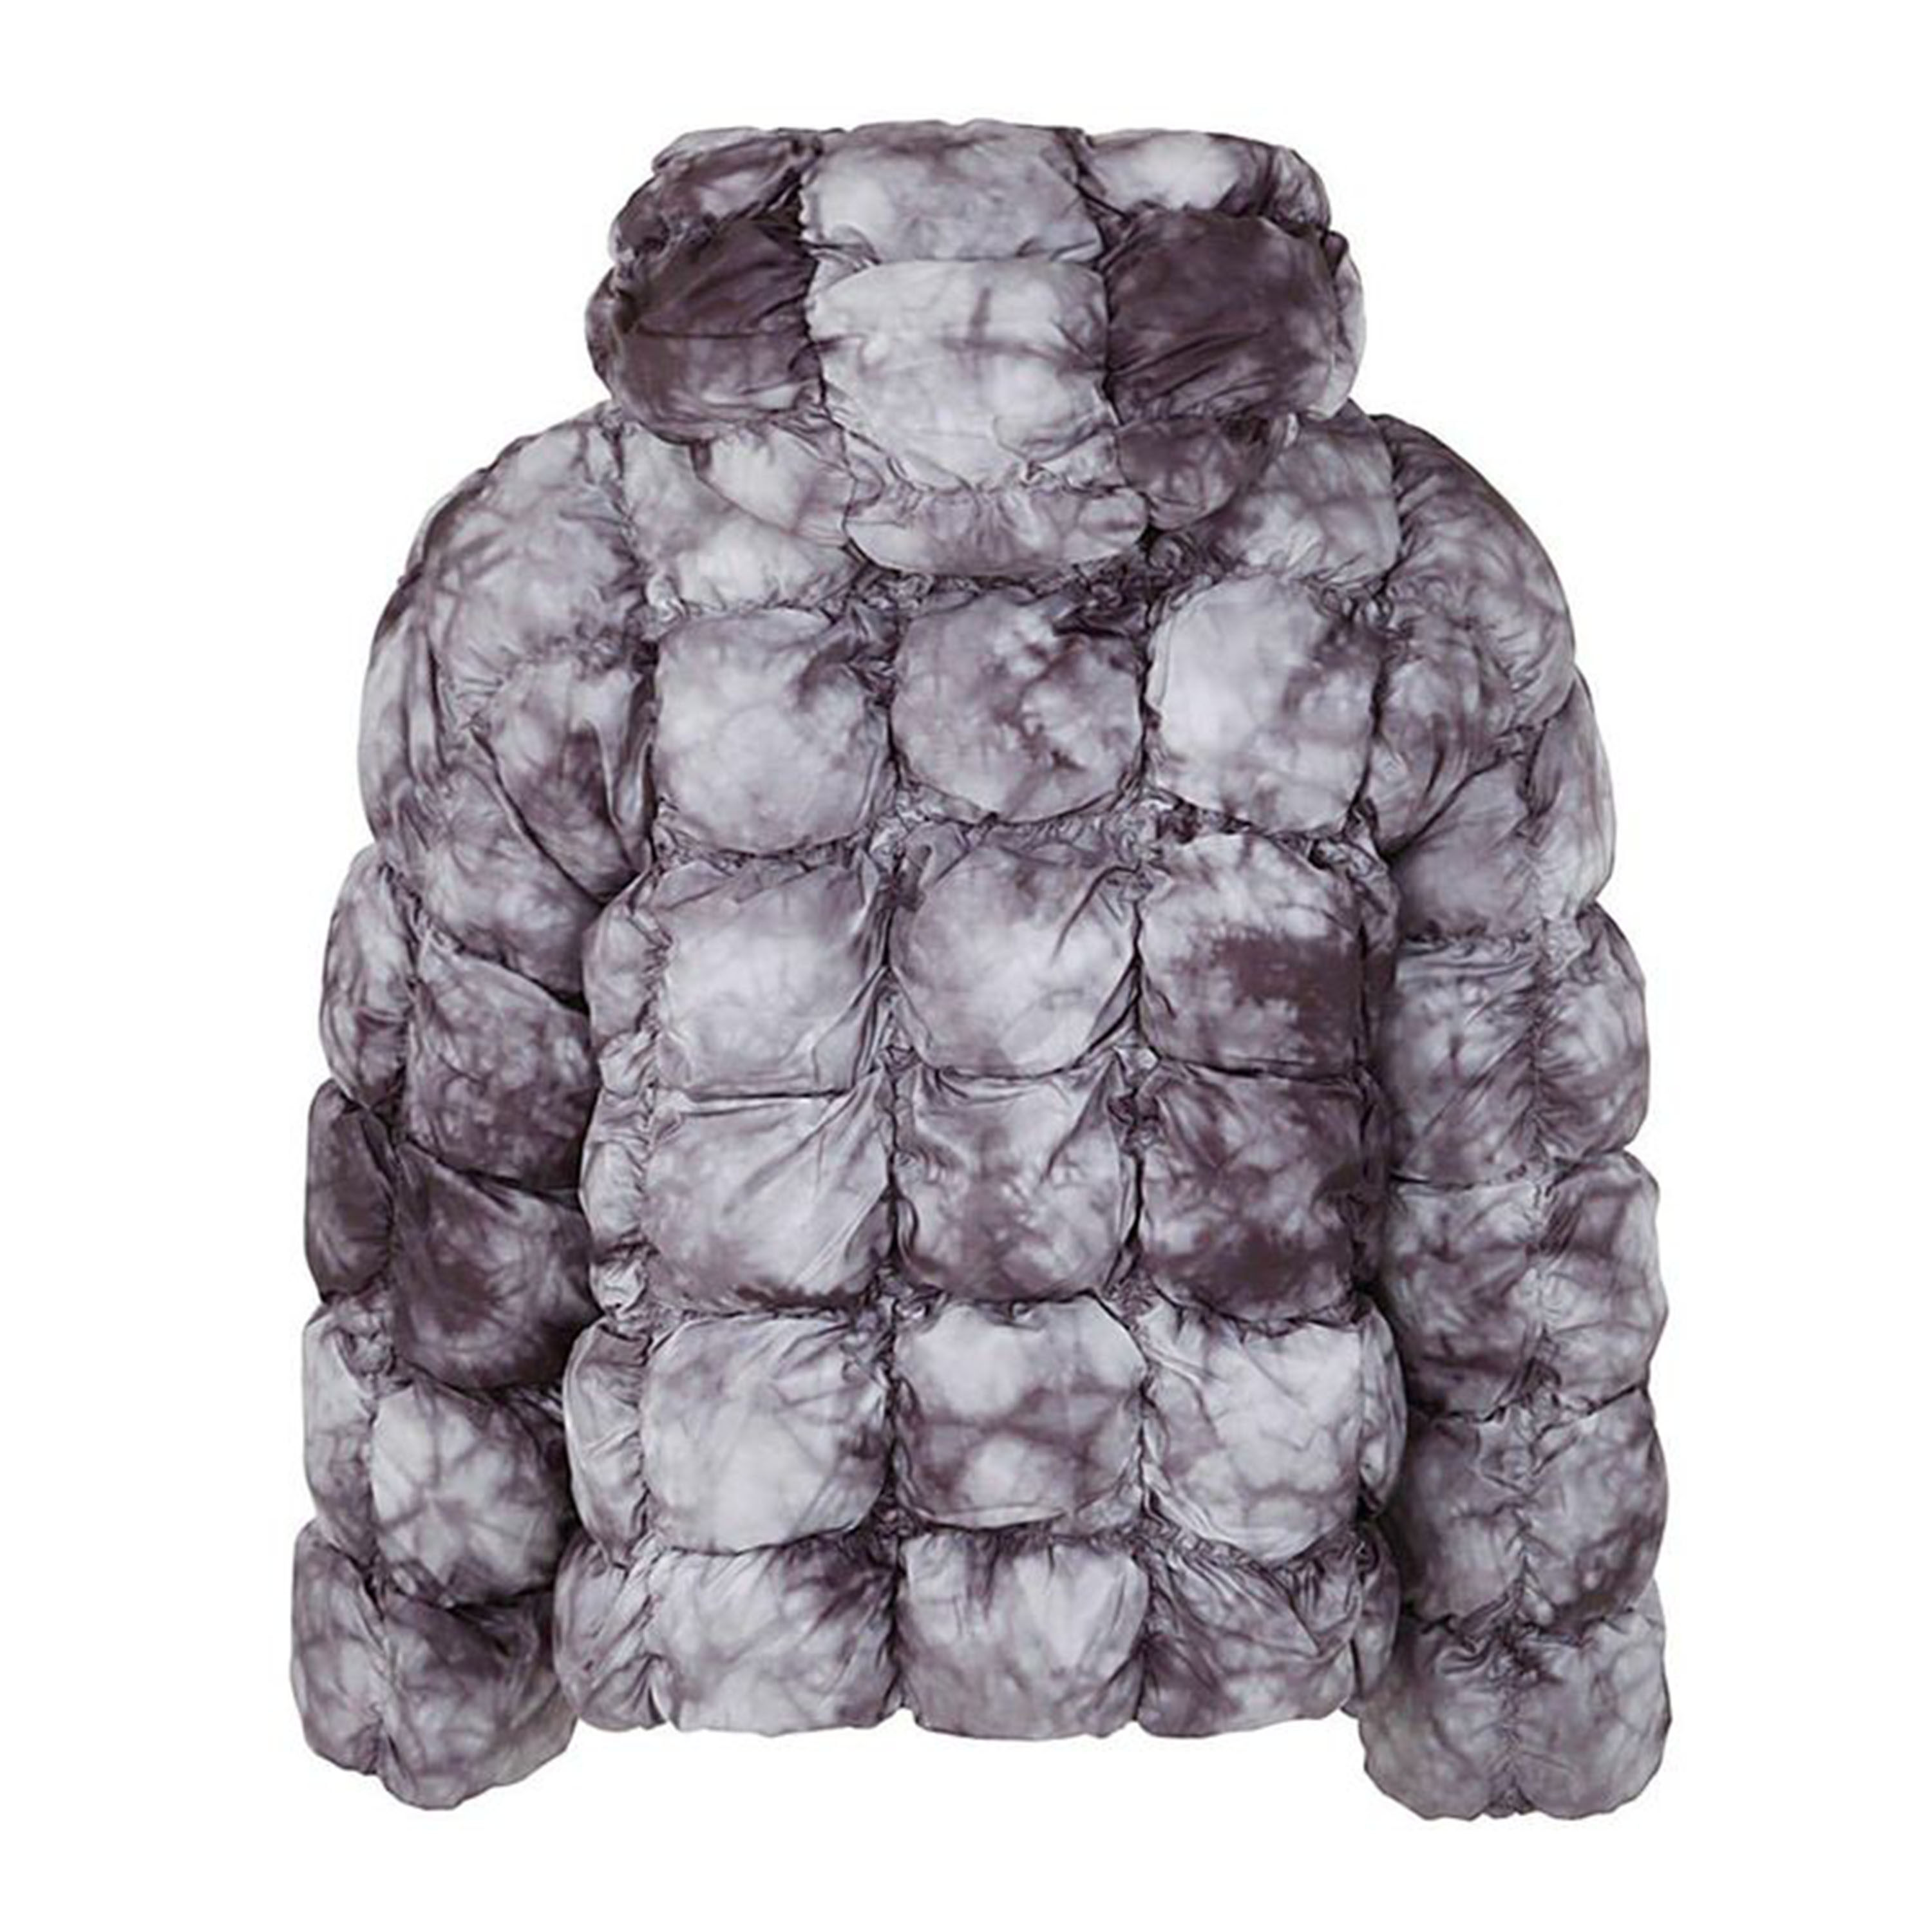 Jacket, Puffer Jacket, 80% Duck Down Filling, Sfumato Pattern, Short Hooded Zipper